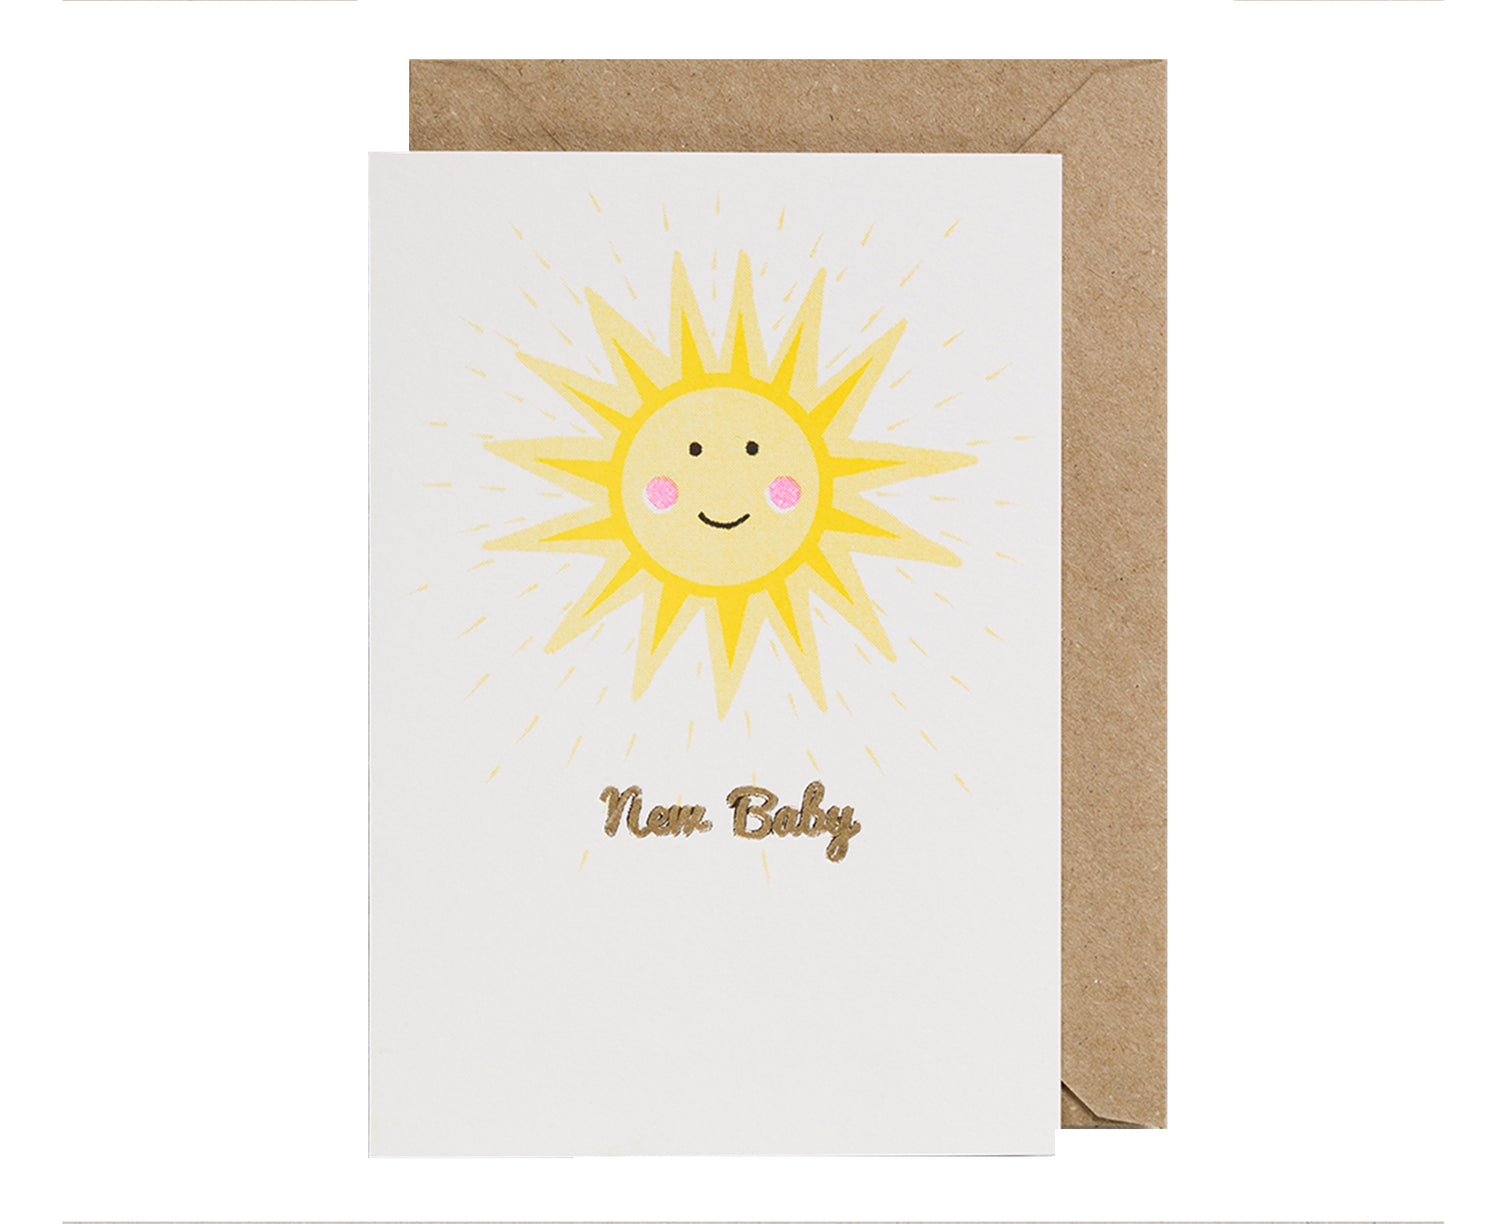 New Baby Card - Cheery Sun - by Petra Boase